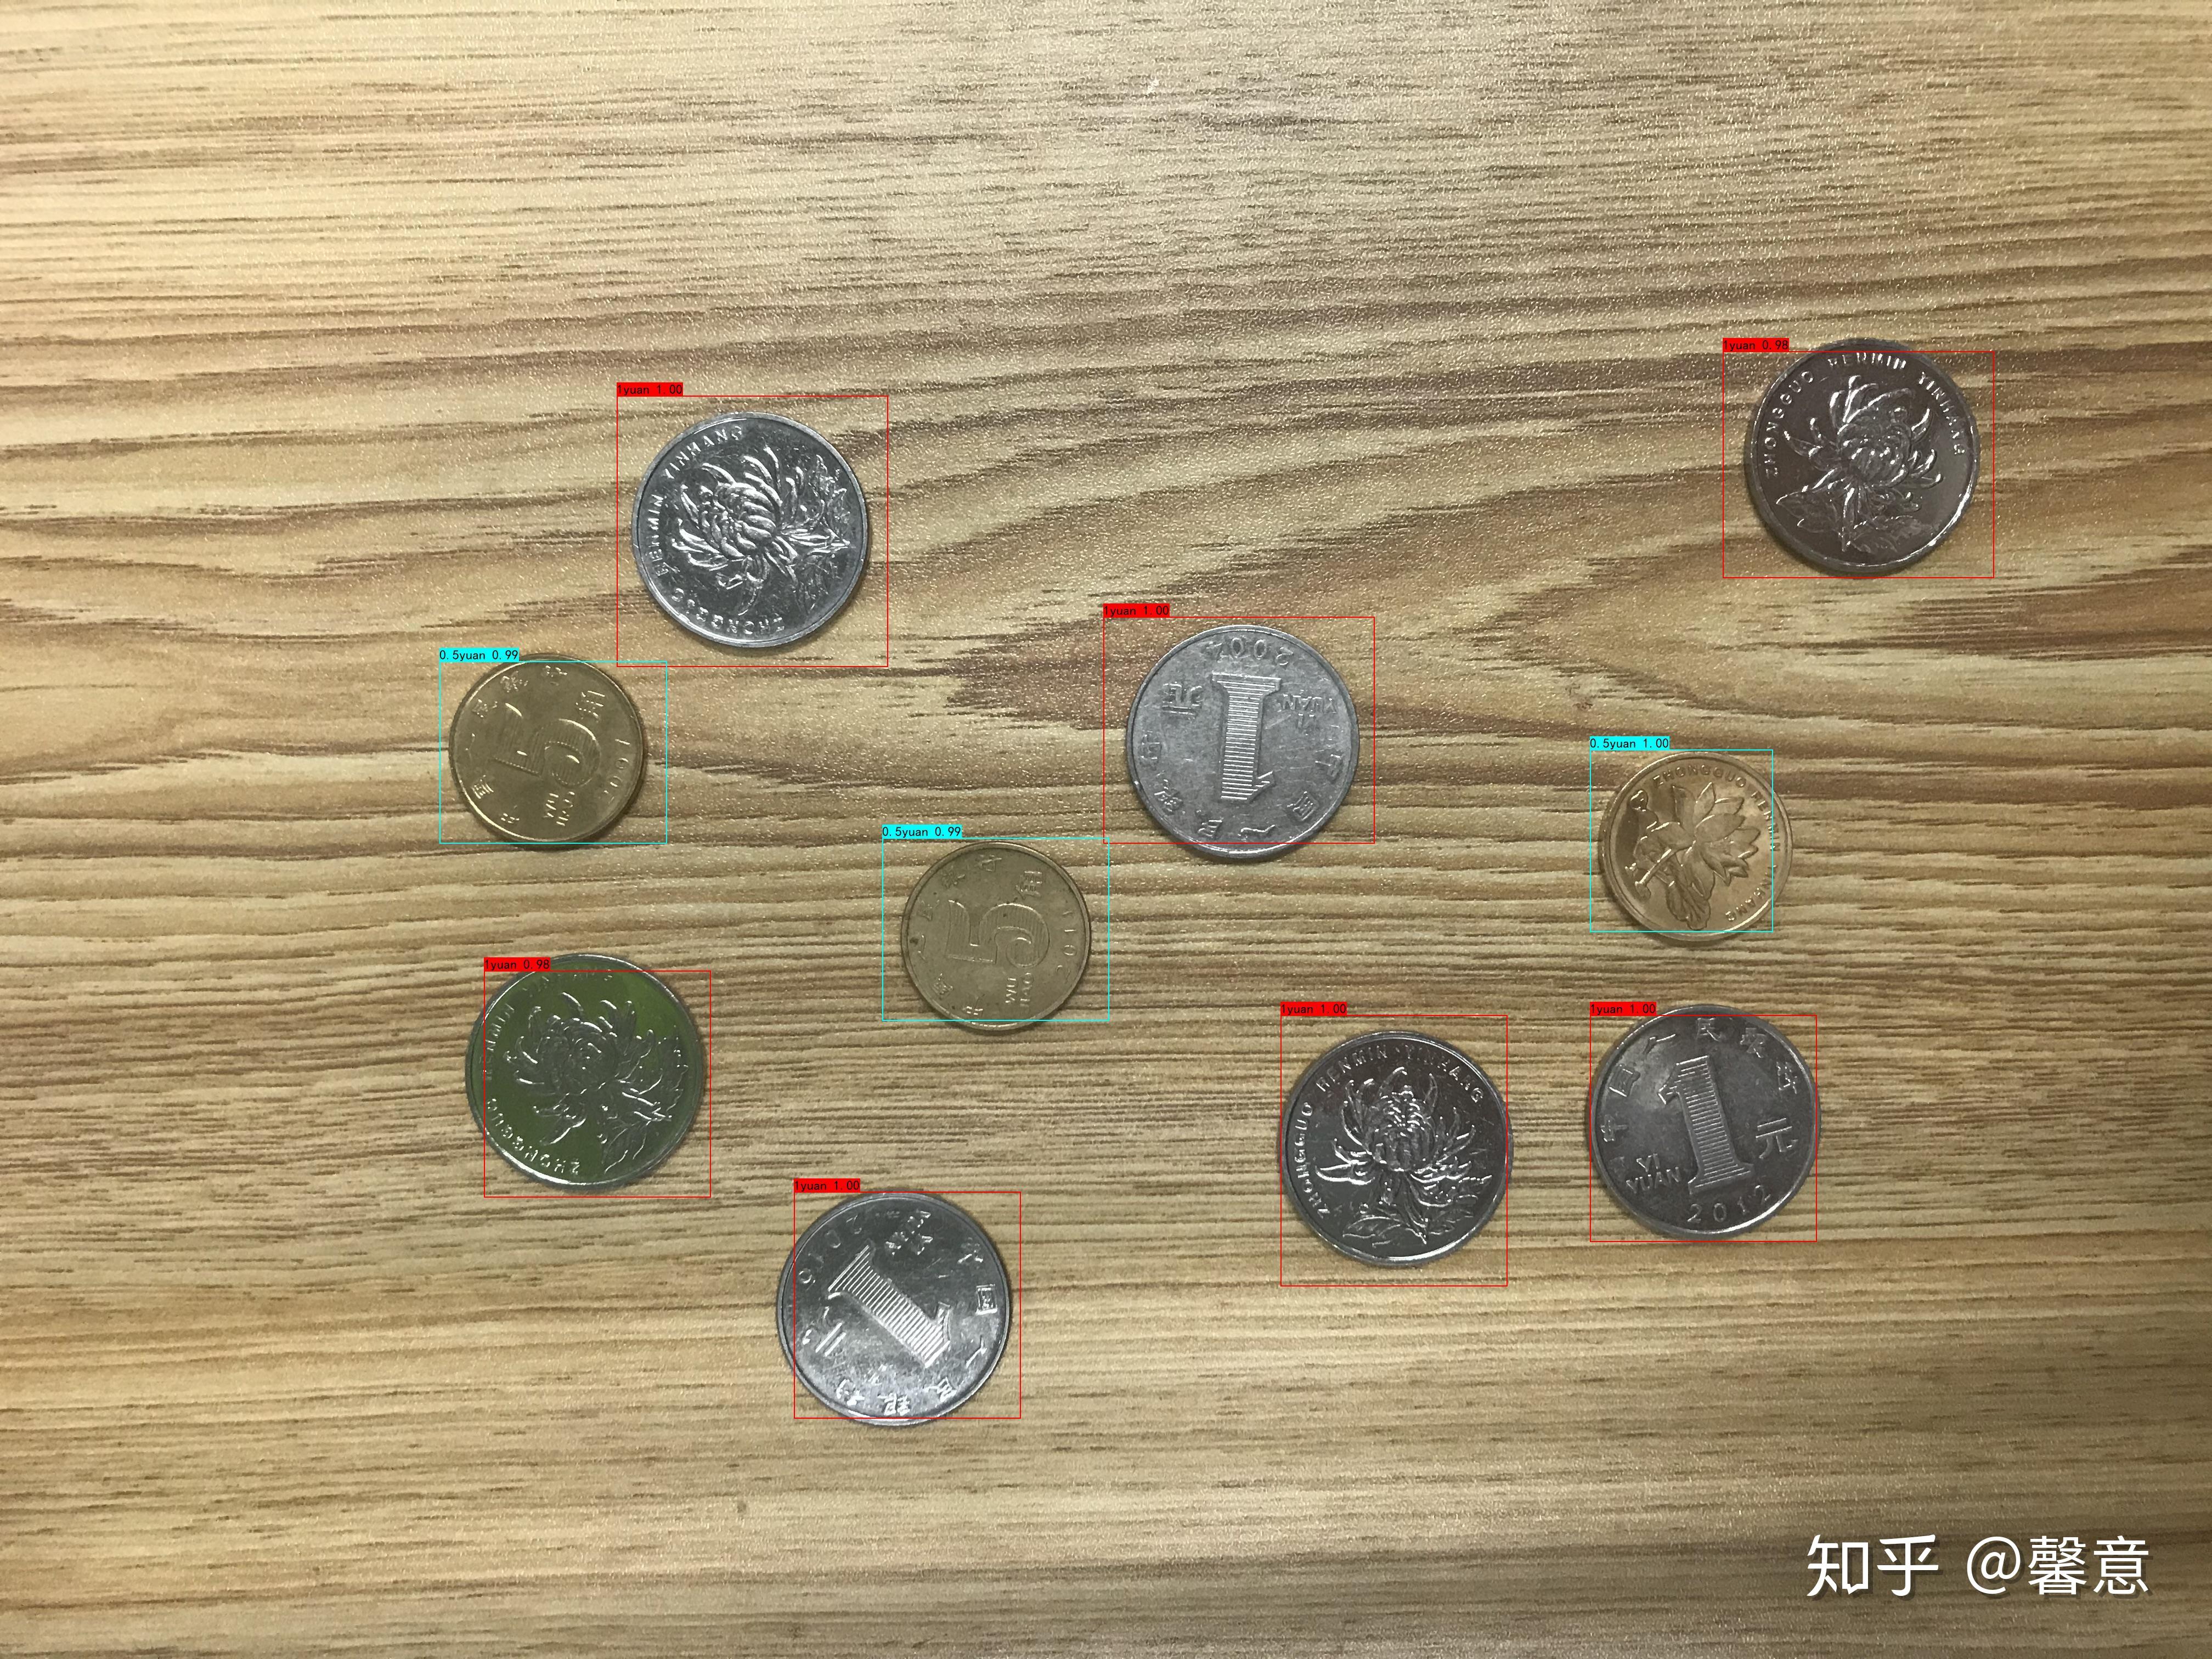 1枚瑞典克朗SEK硬币 库存照片. 图片 包括有 更改, 瑞典语, 招标, 一个, 货币, 现金, 瑞典 - 75486354